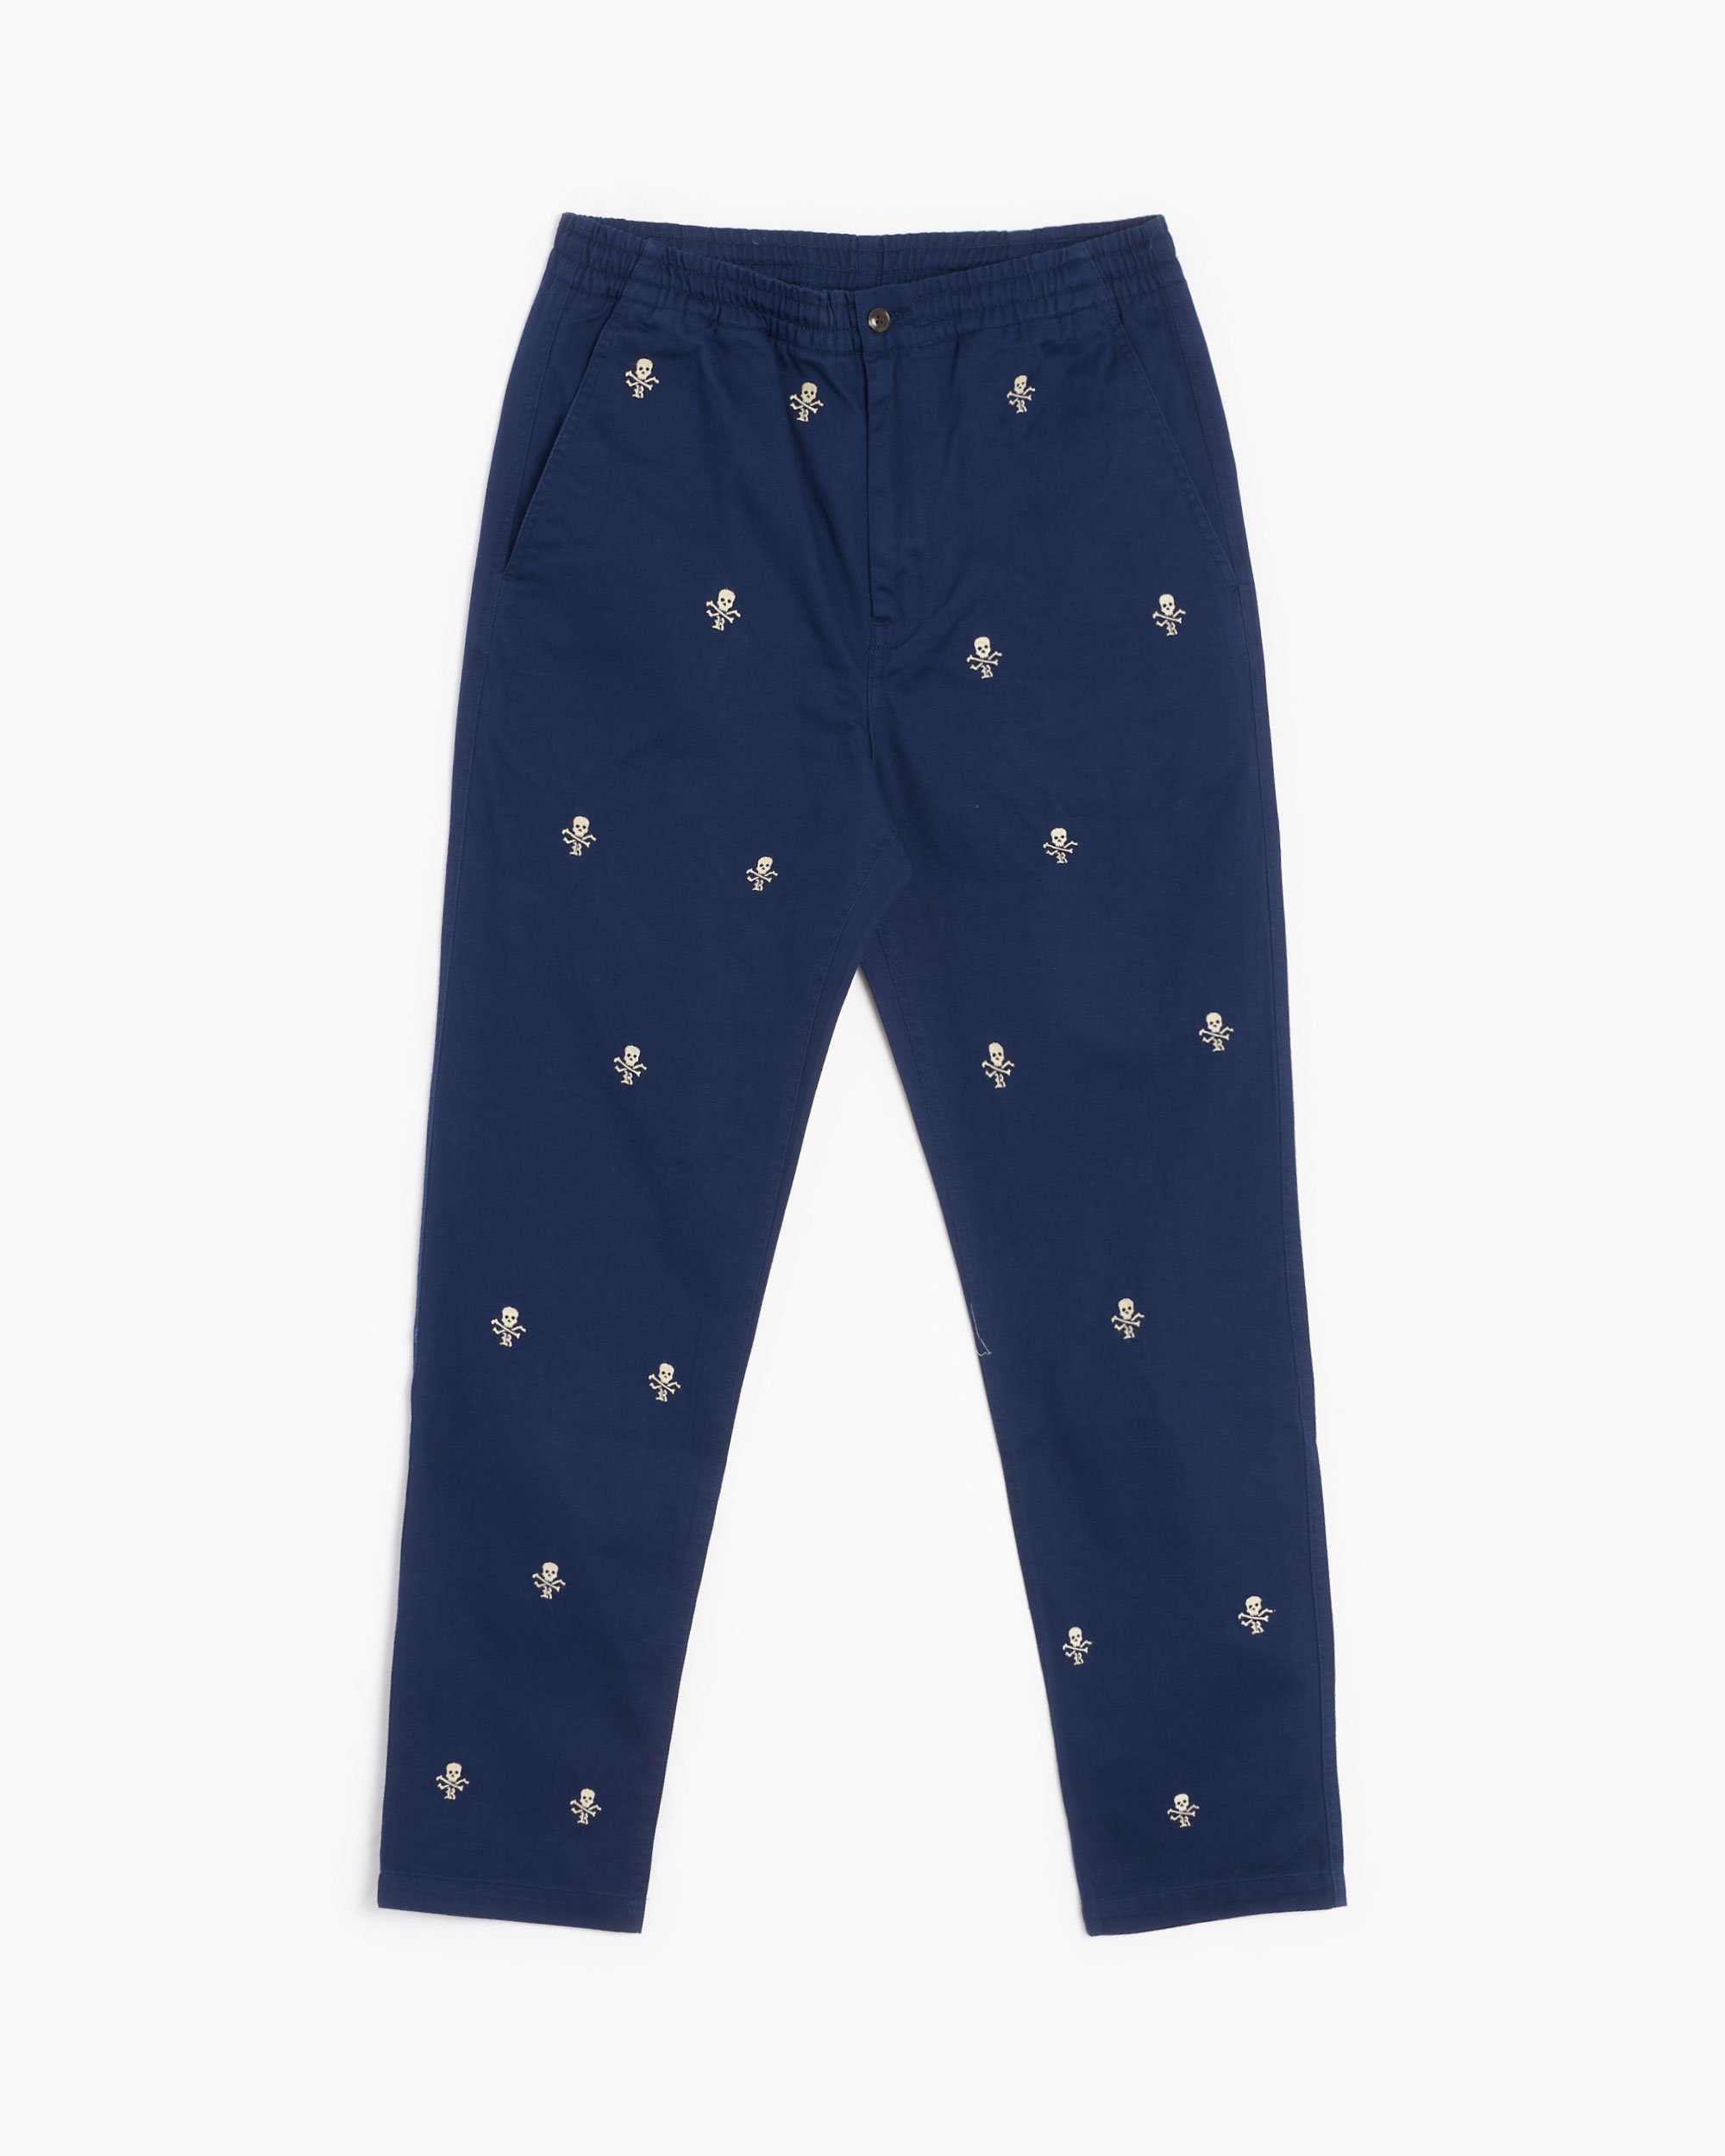 Polo Ralph Lauren Men's Classic Fit Prepster Pants Blue